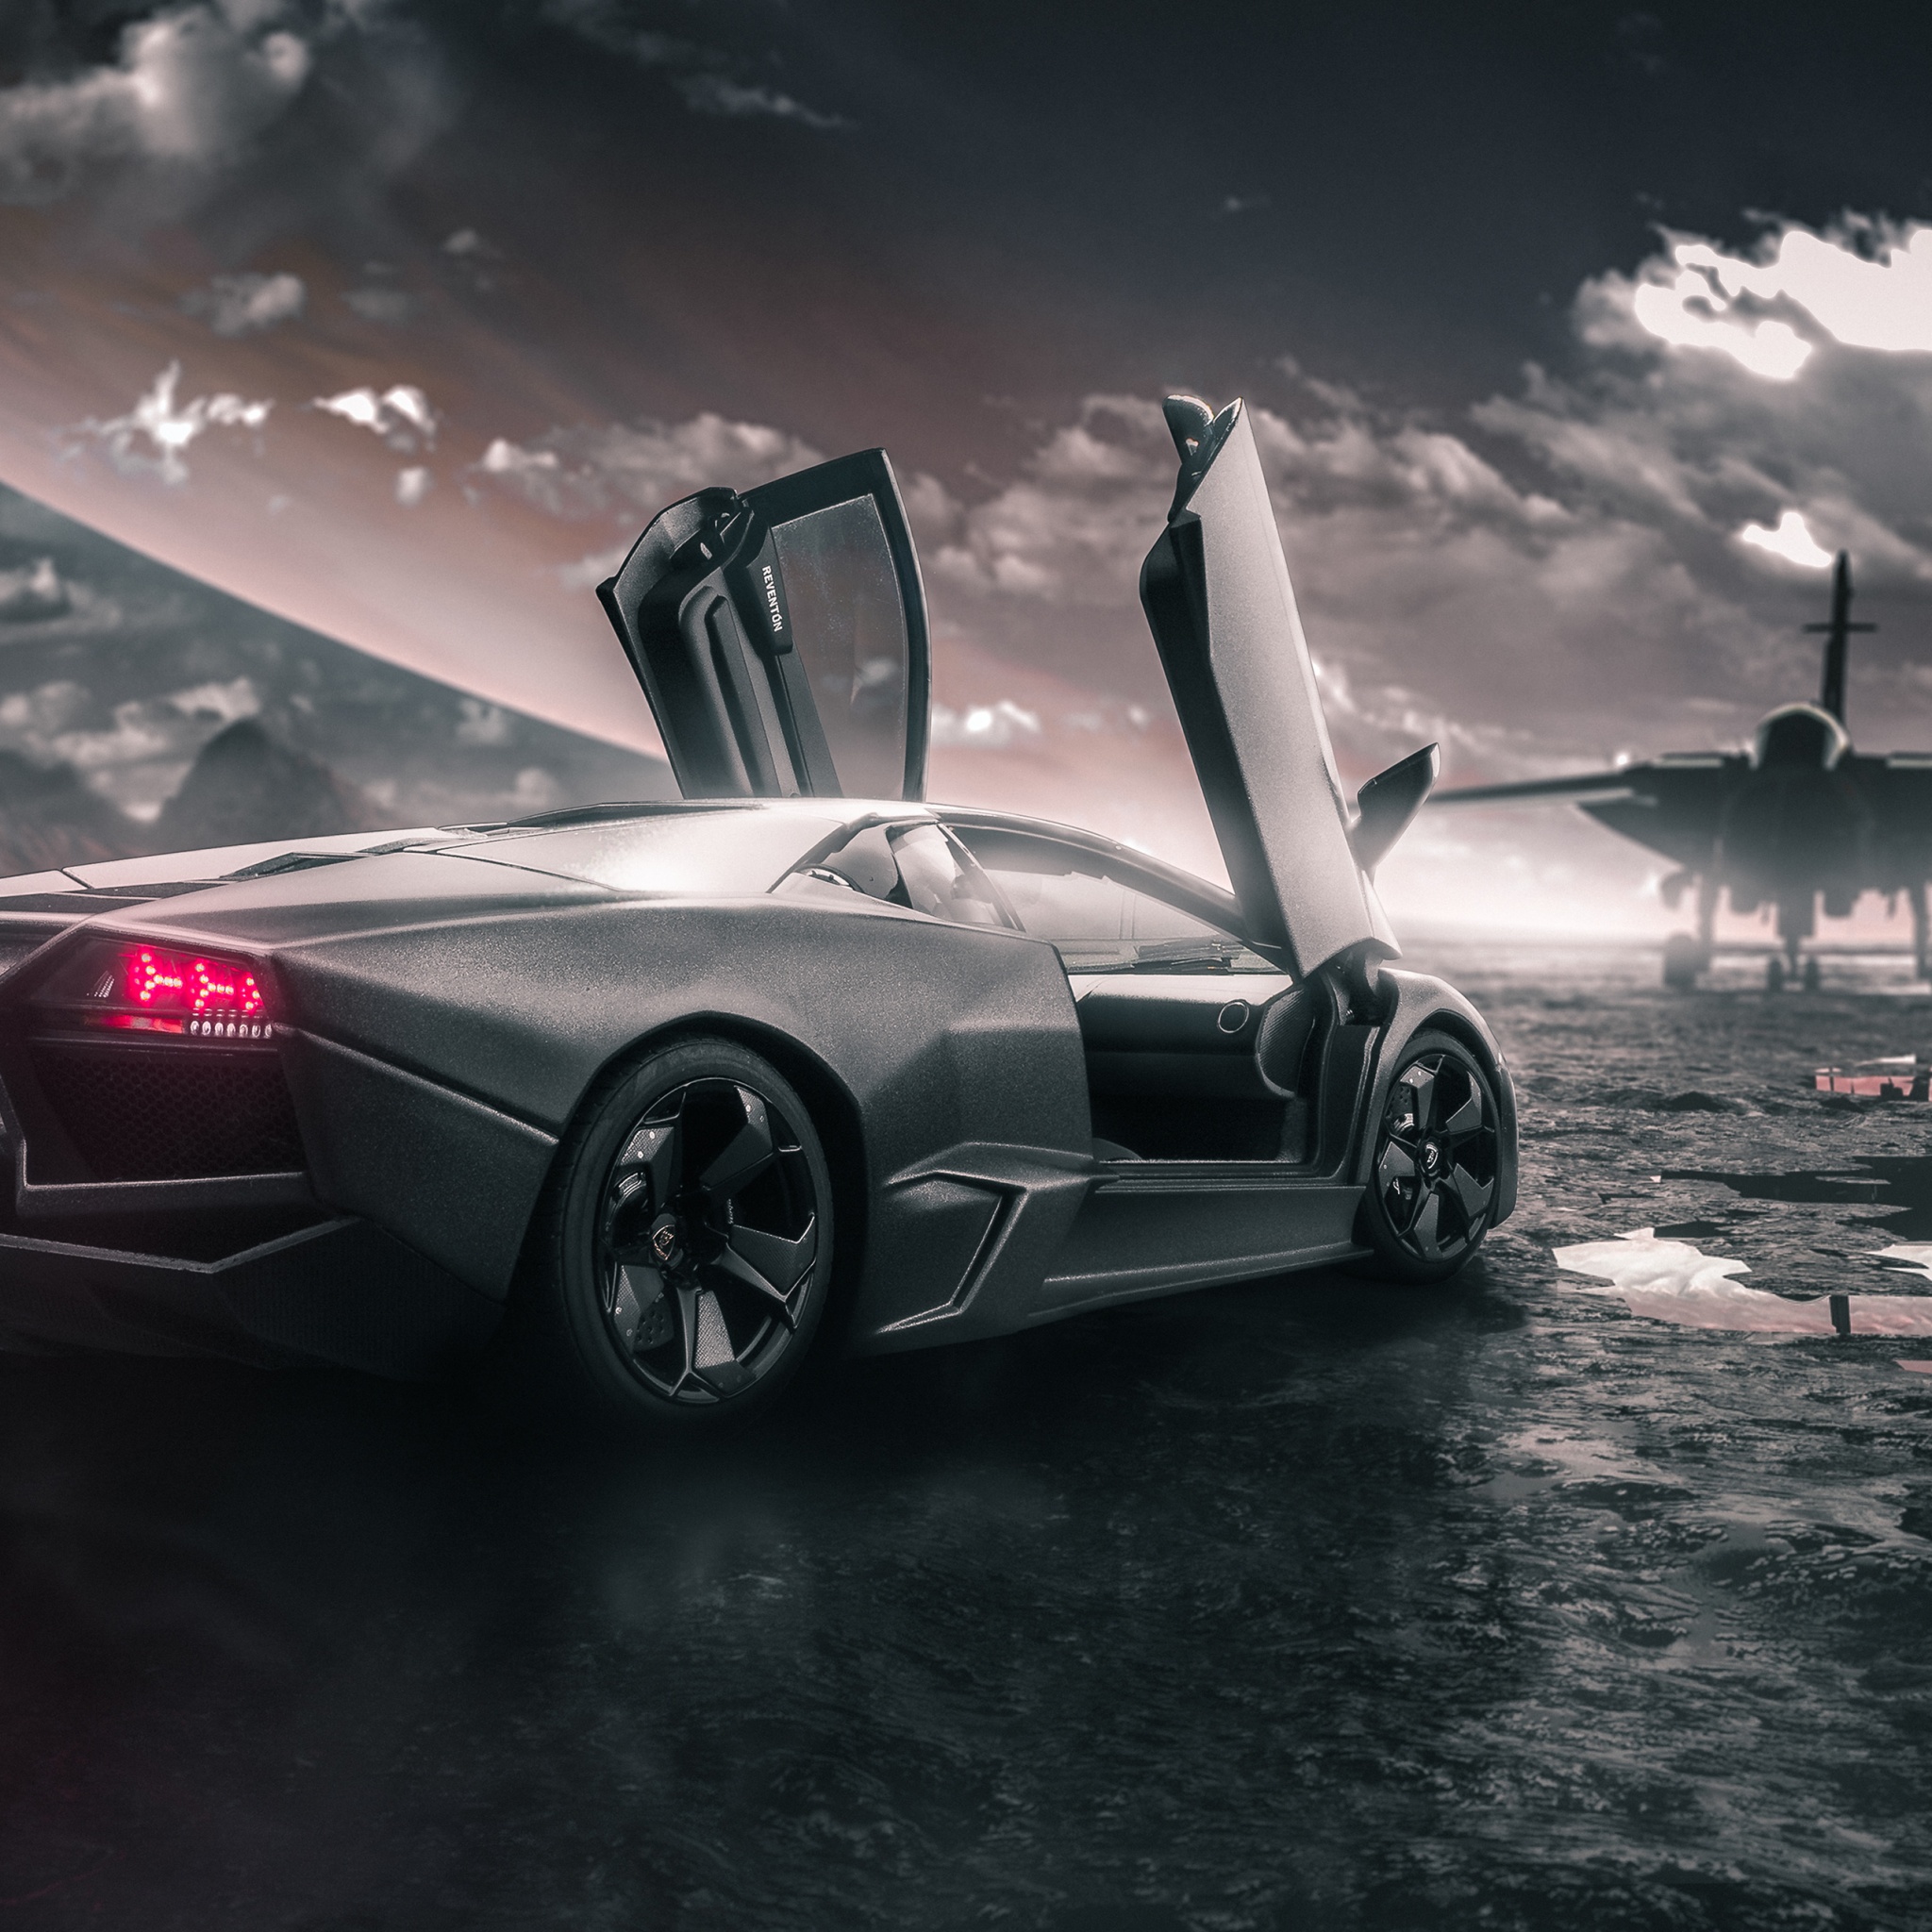 Lamborghini Reventon Wallpaper 4K, Jet fighter, Sports cars, Black cars